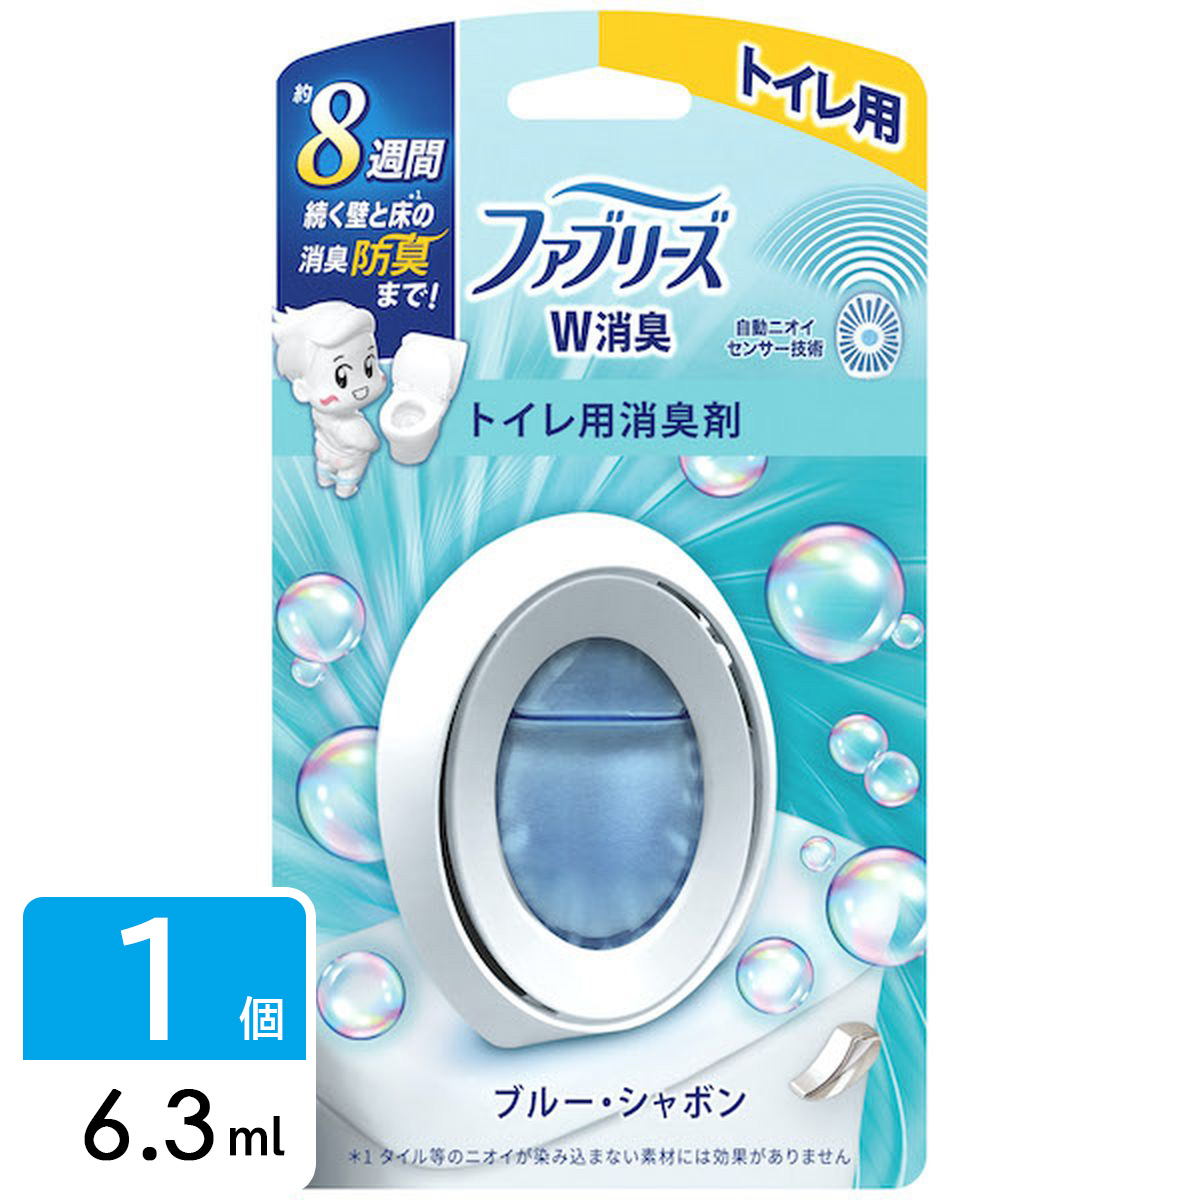 ファブリーズ 消臭芳香剤 Ｗ消臭 トイレ用 ブルー・シャボン 6.3ml